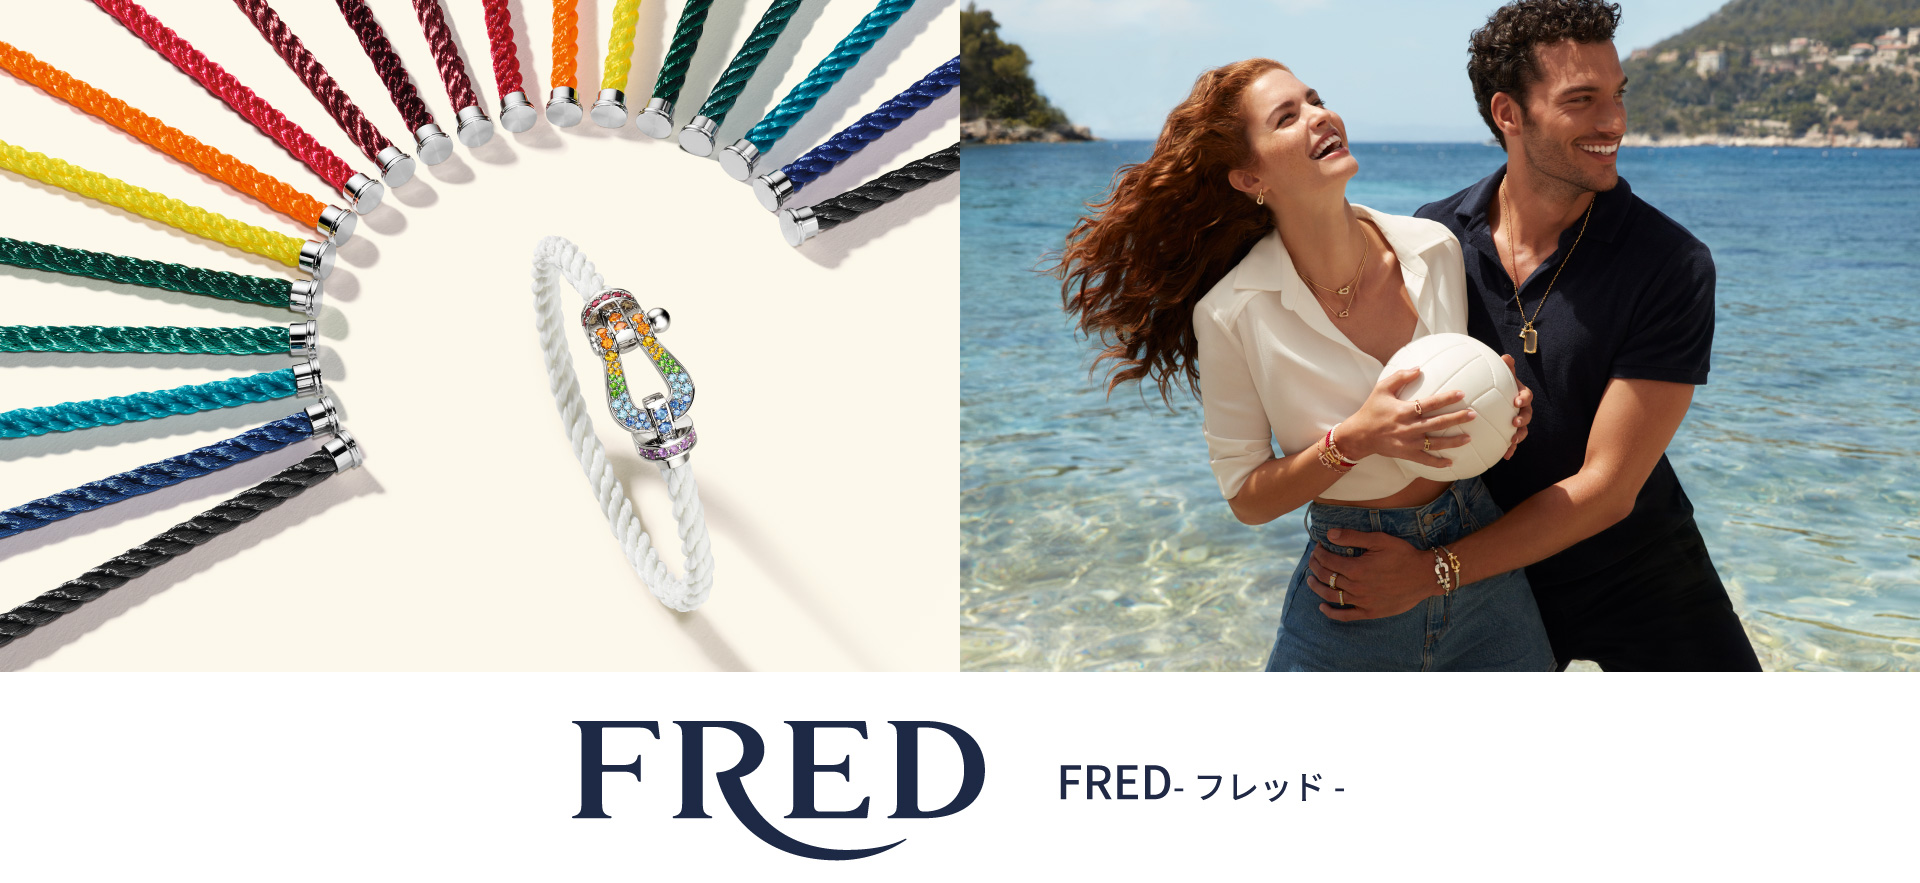 FRED-フレッド-